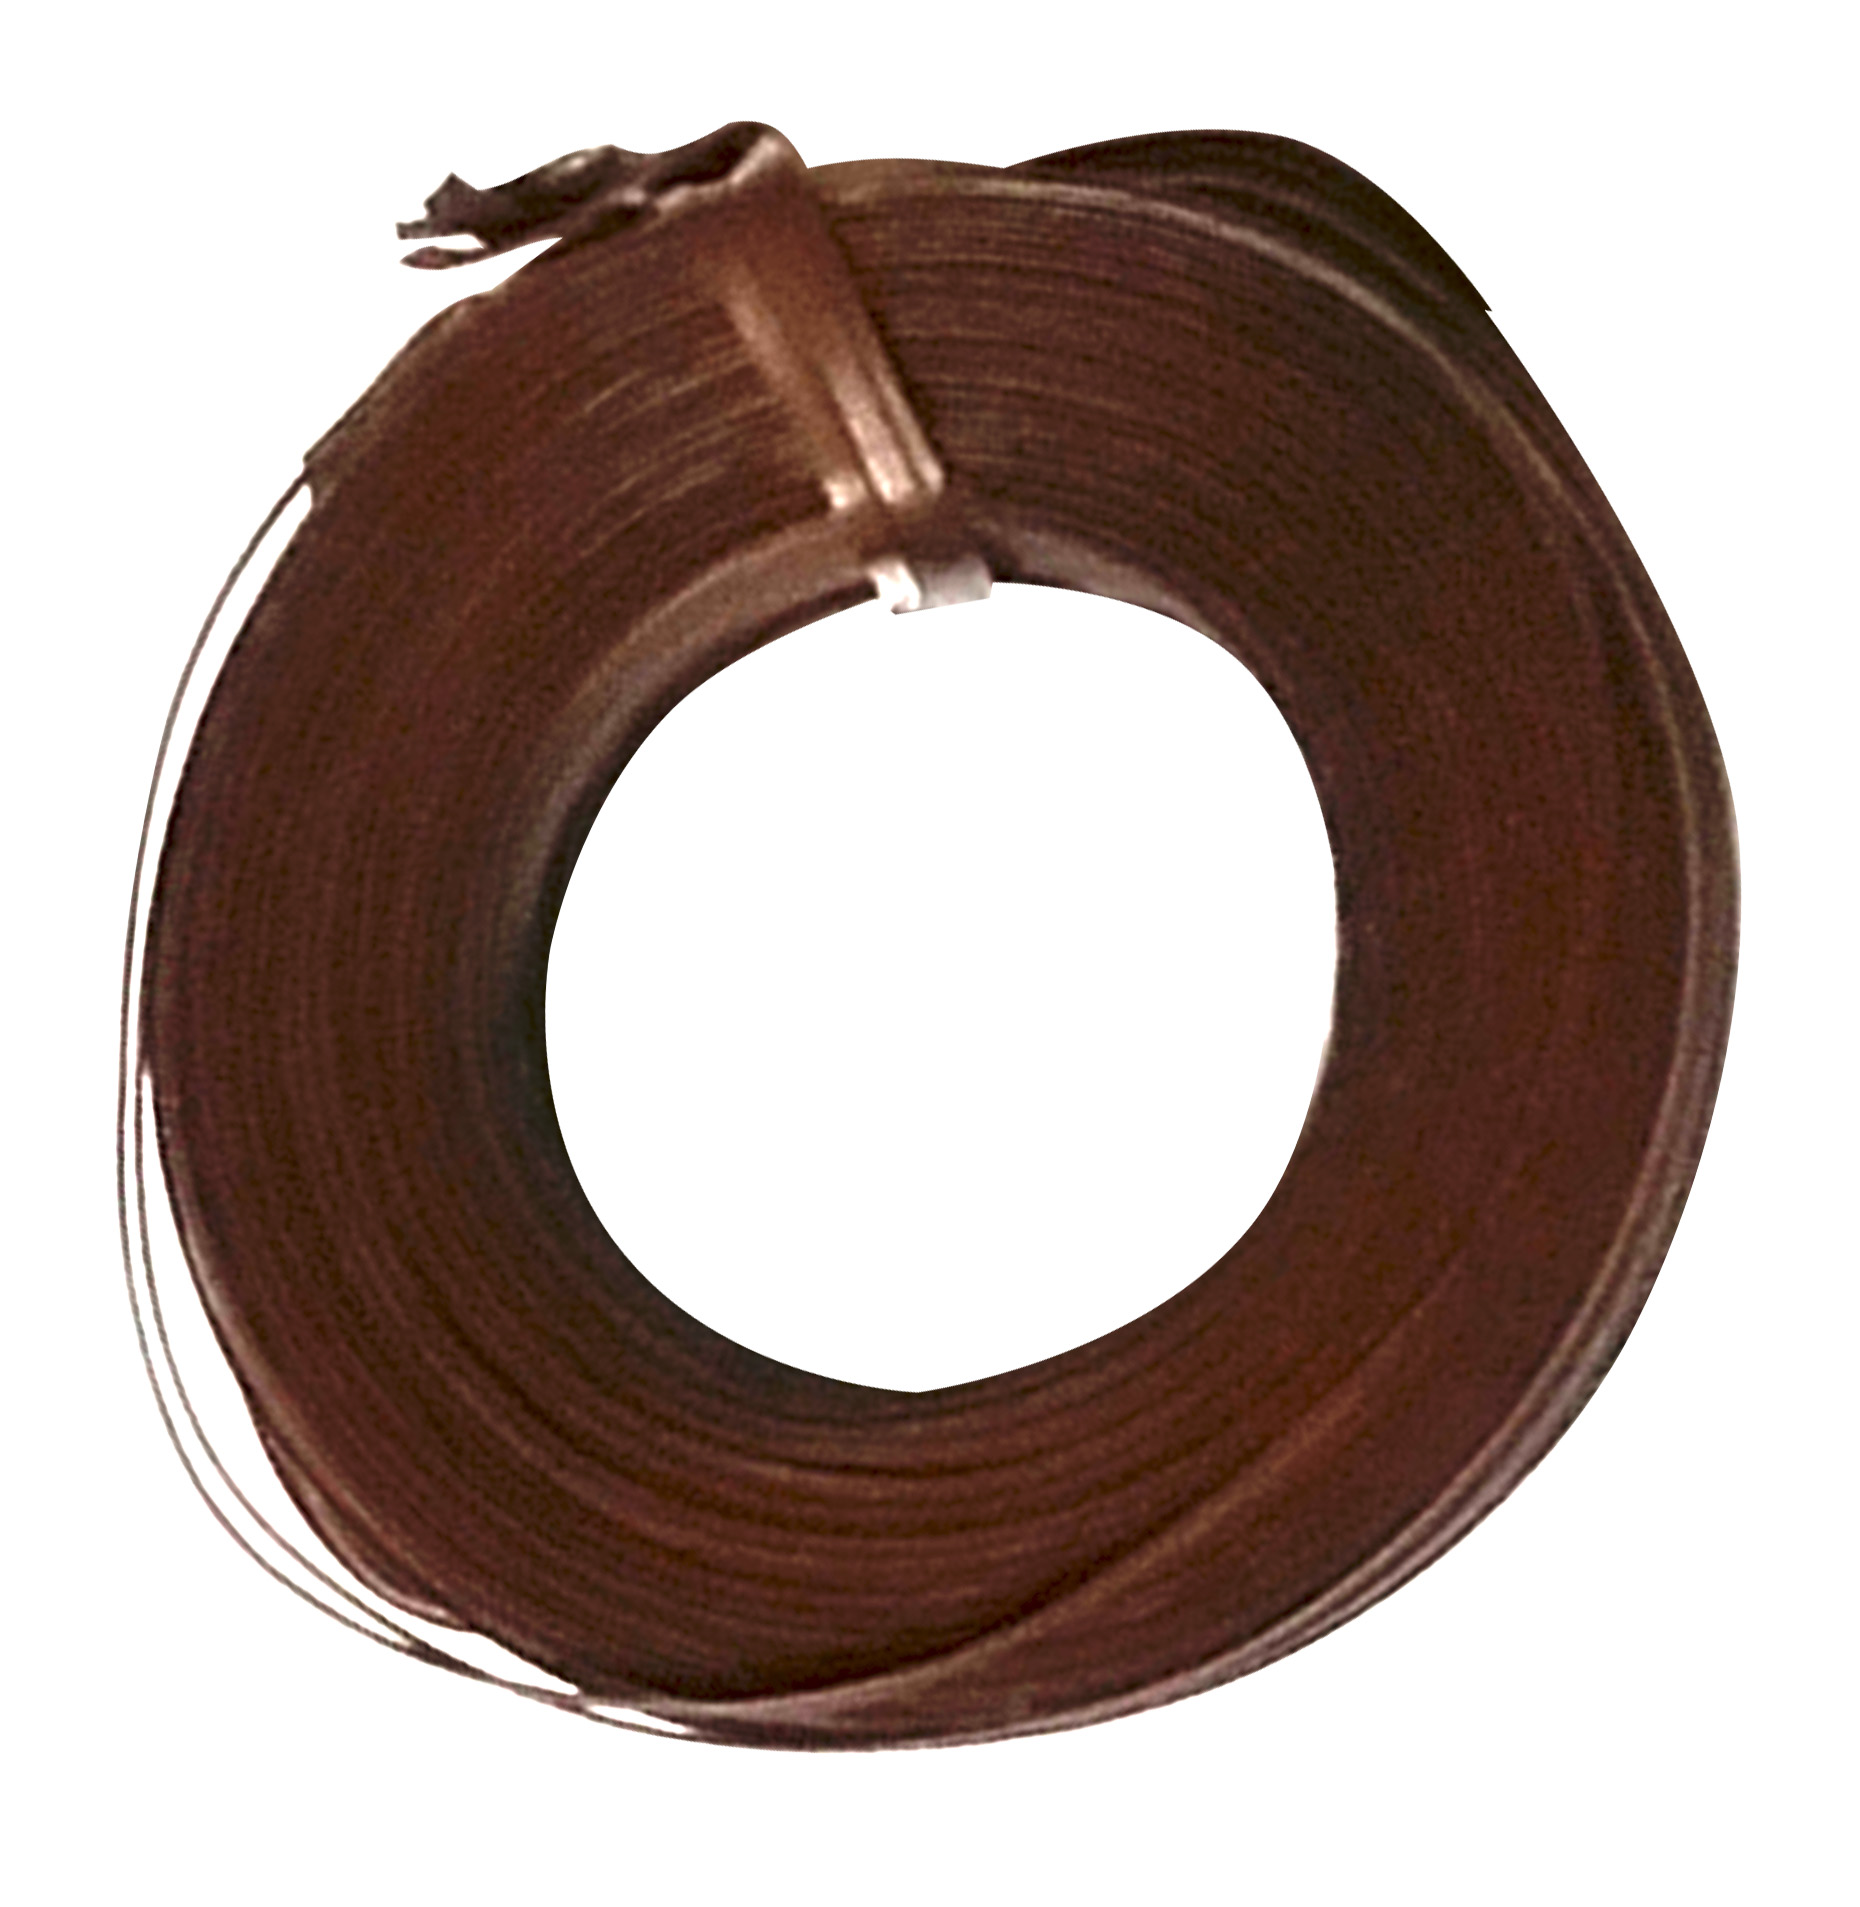 Tie Wire ET1-WIRE1 295-Feet Brown PVC Covered Twist Tie Wire